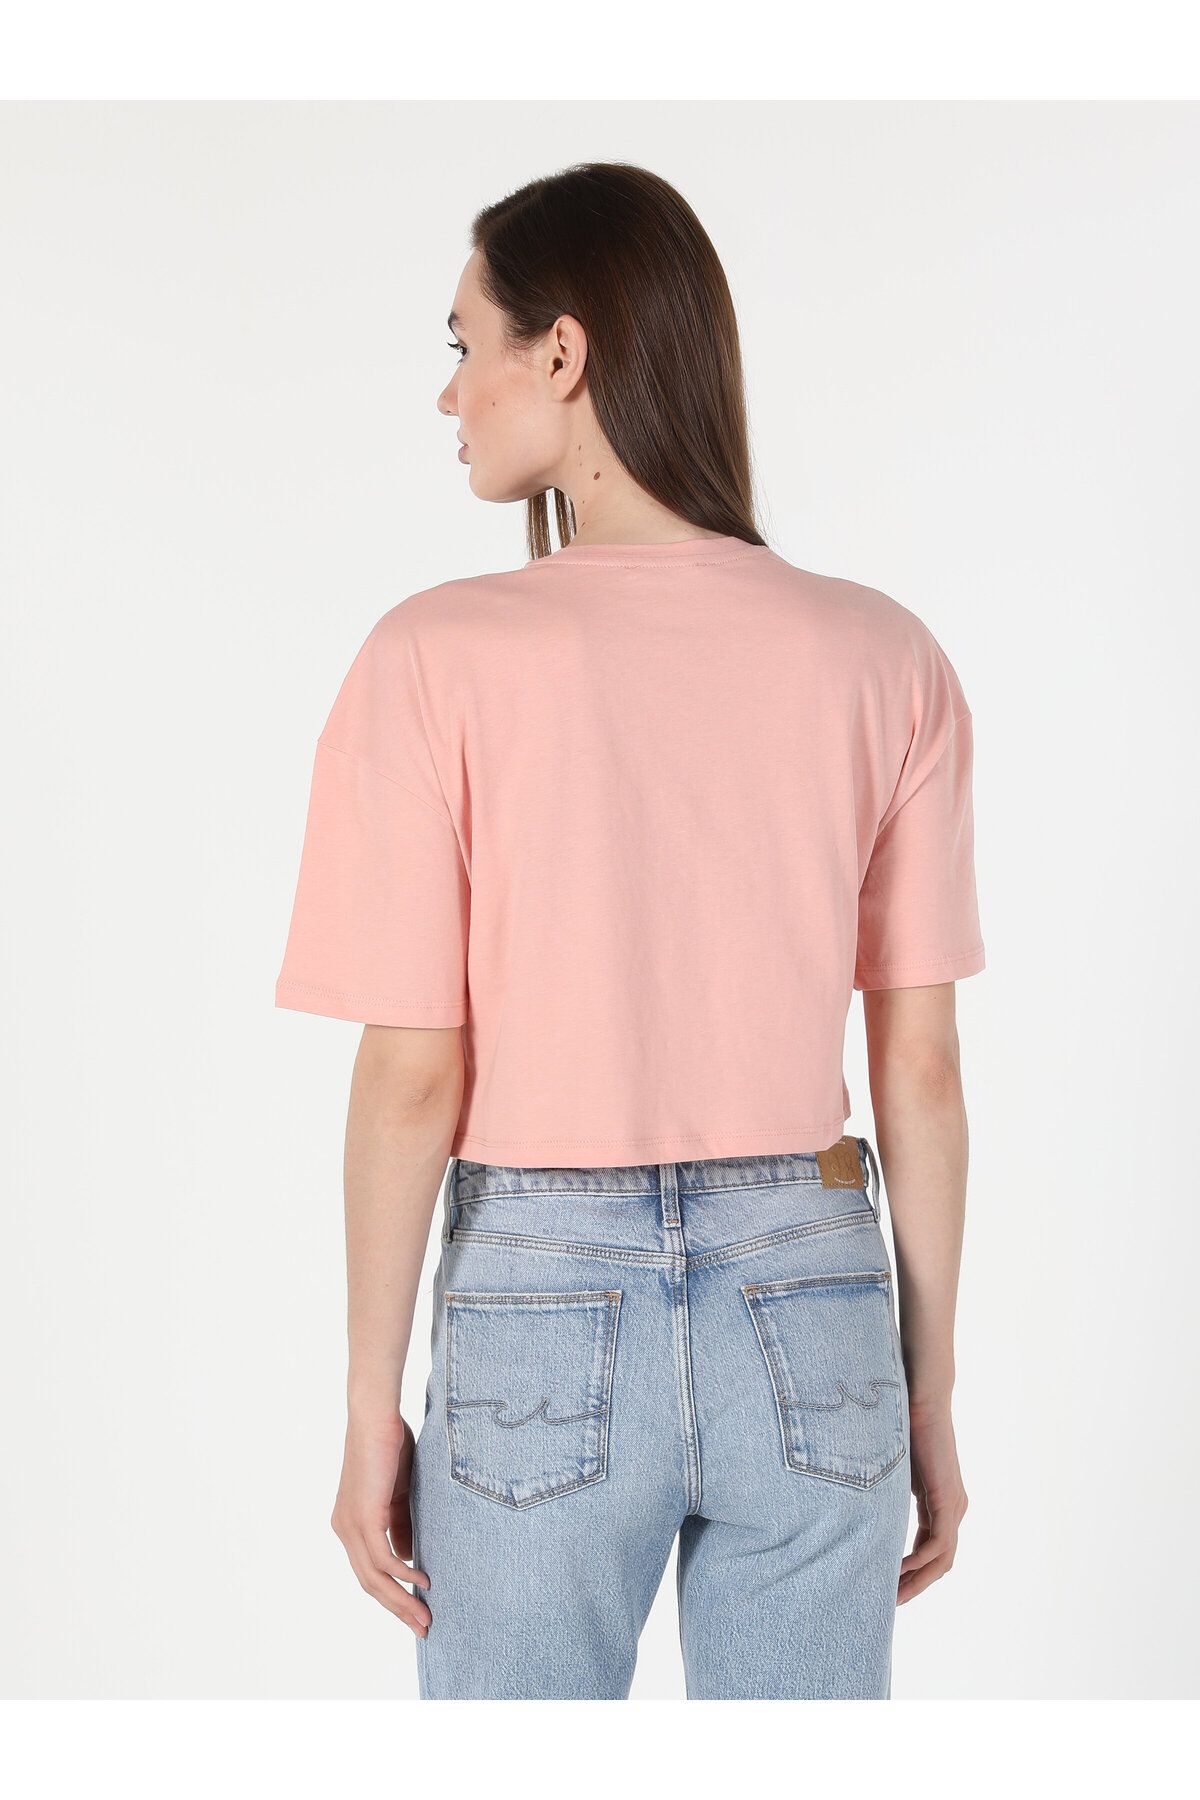 Colin’s تی شرت آستین کوتاه زنانه با یقه Comfort Fit چاپ شده به رنگ صورتی